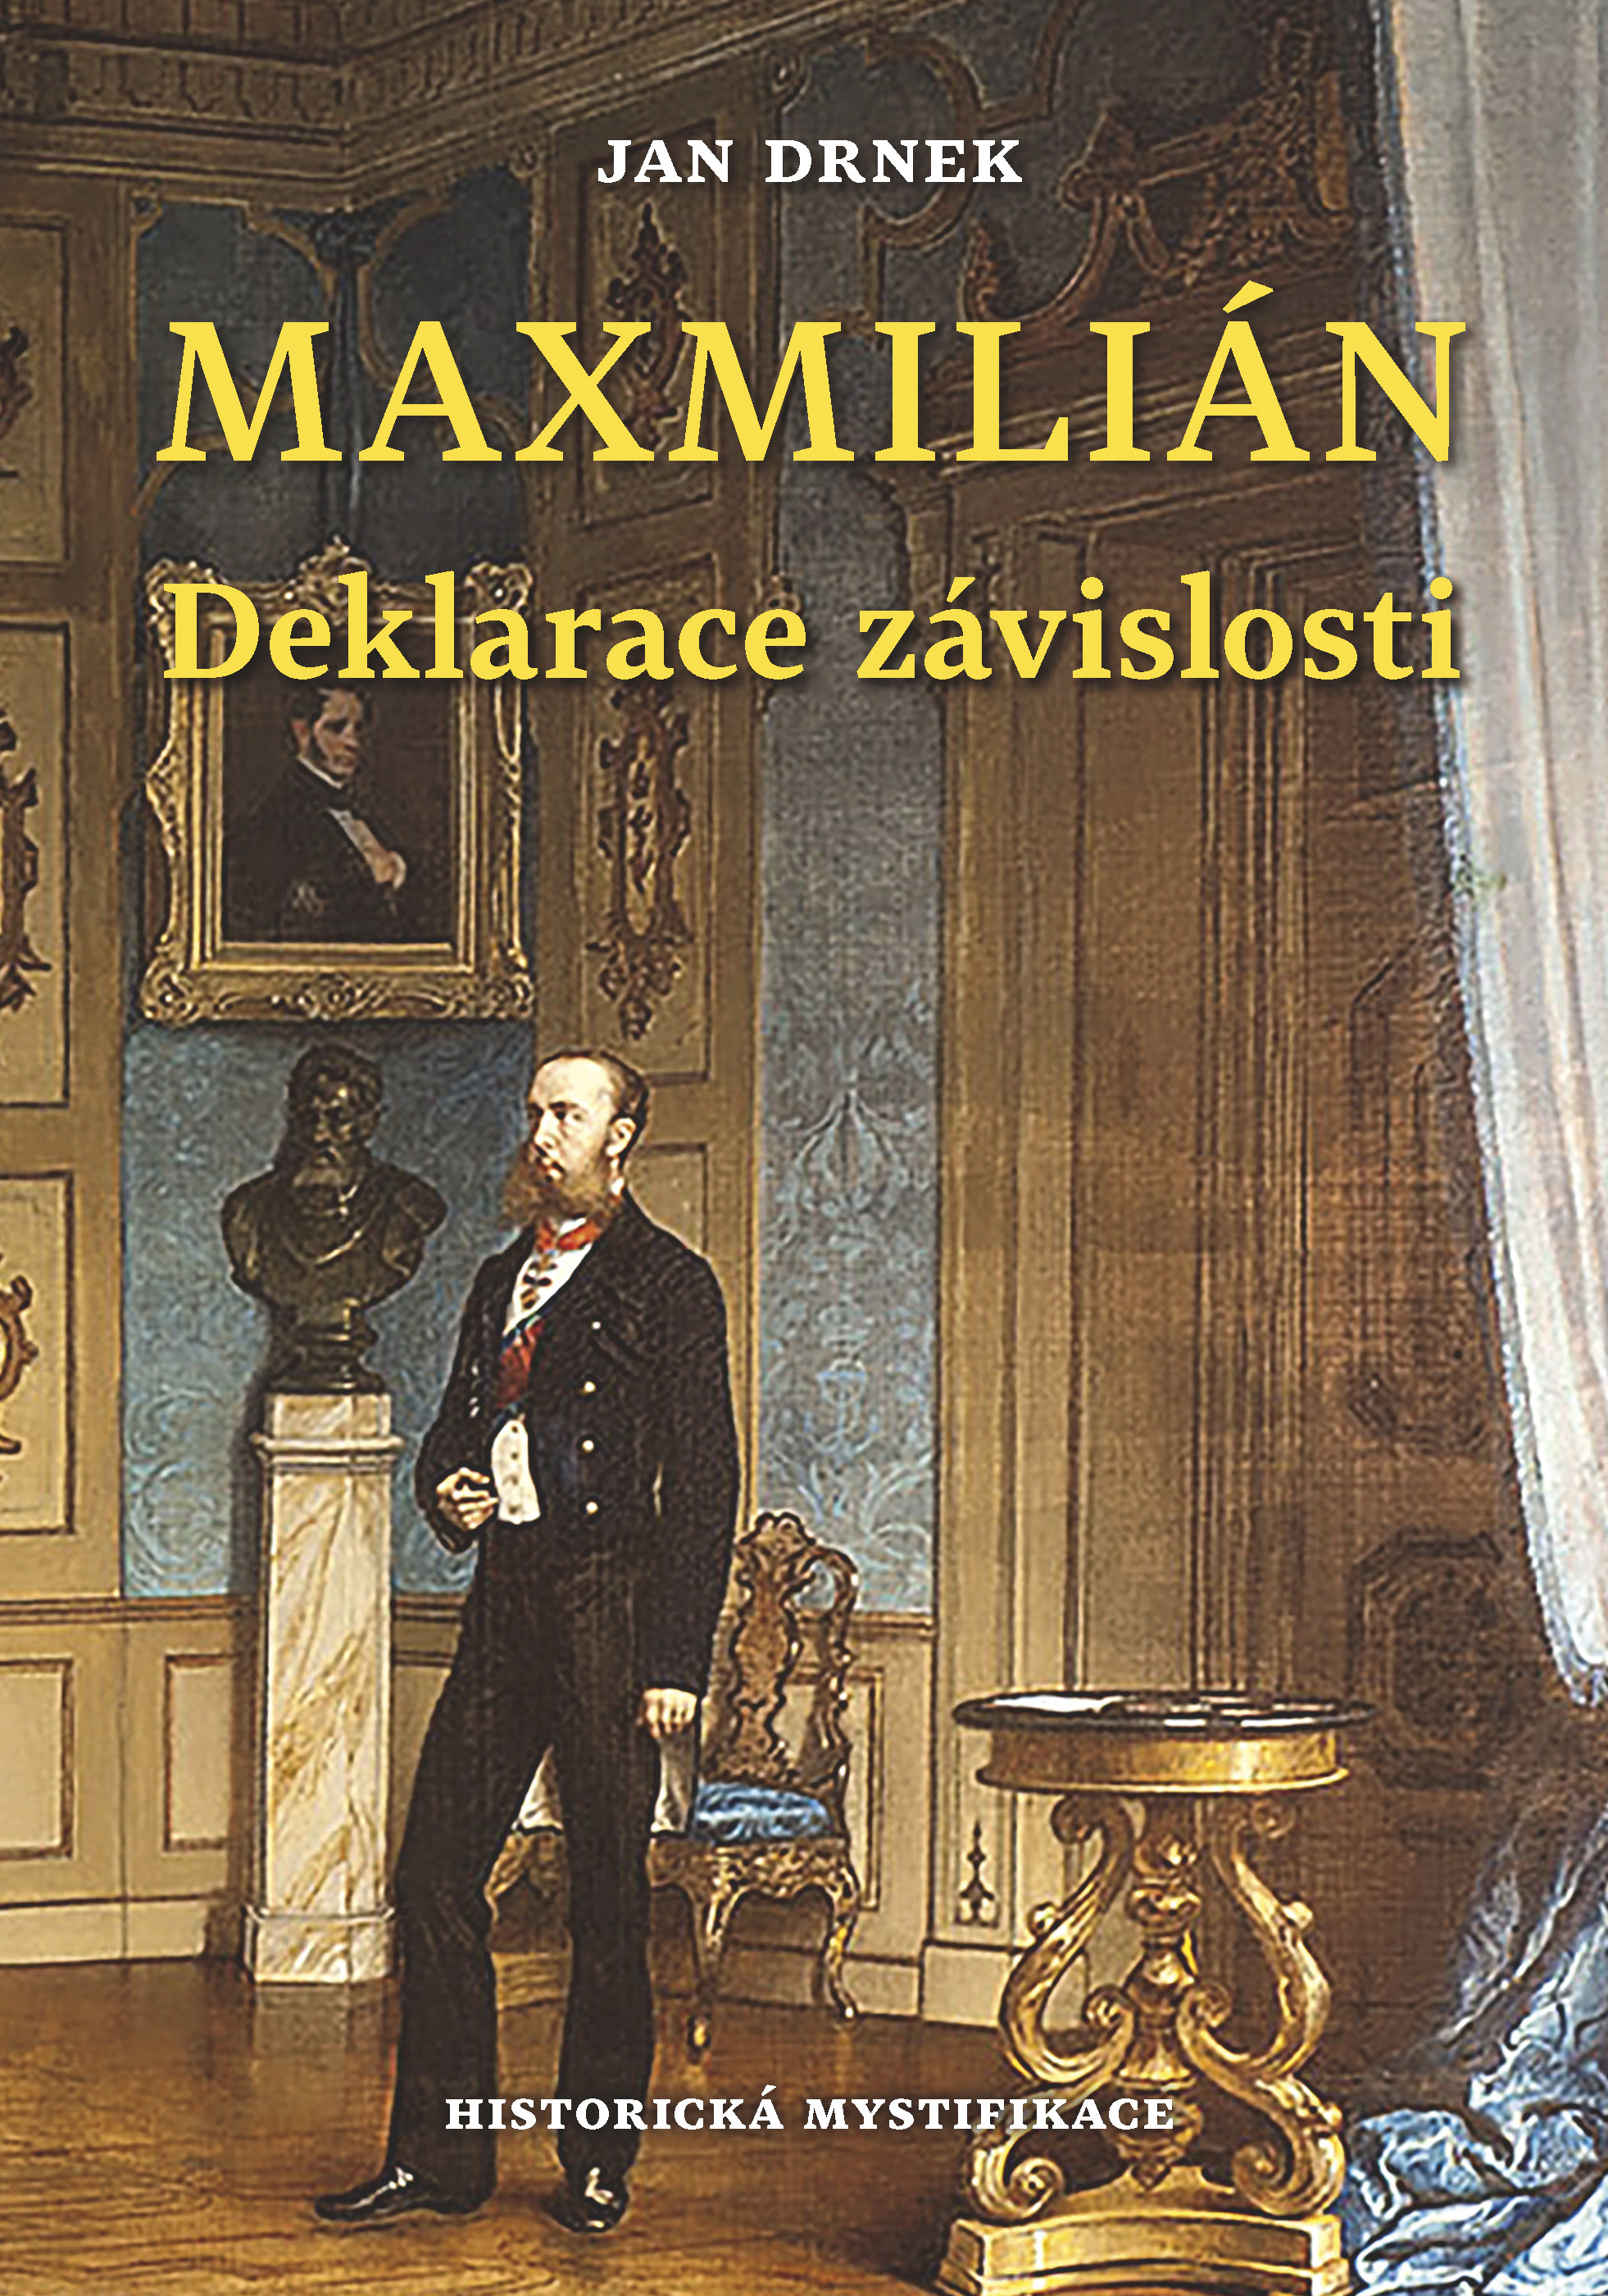 Maxmilián - Deklarace závislosti